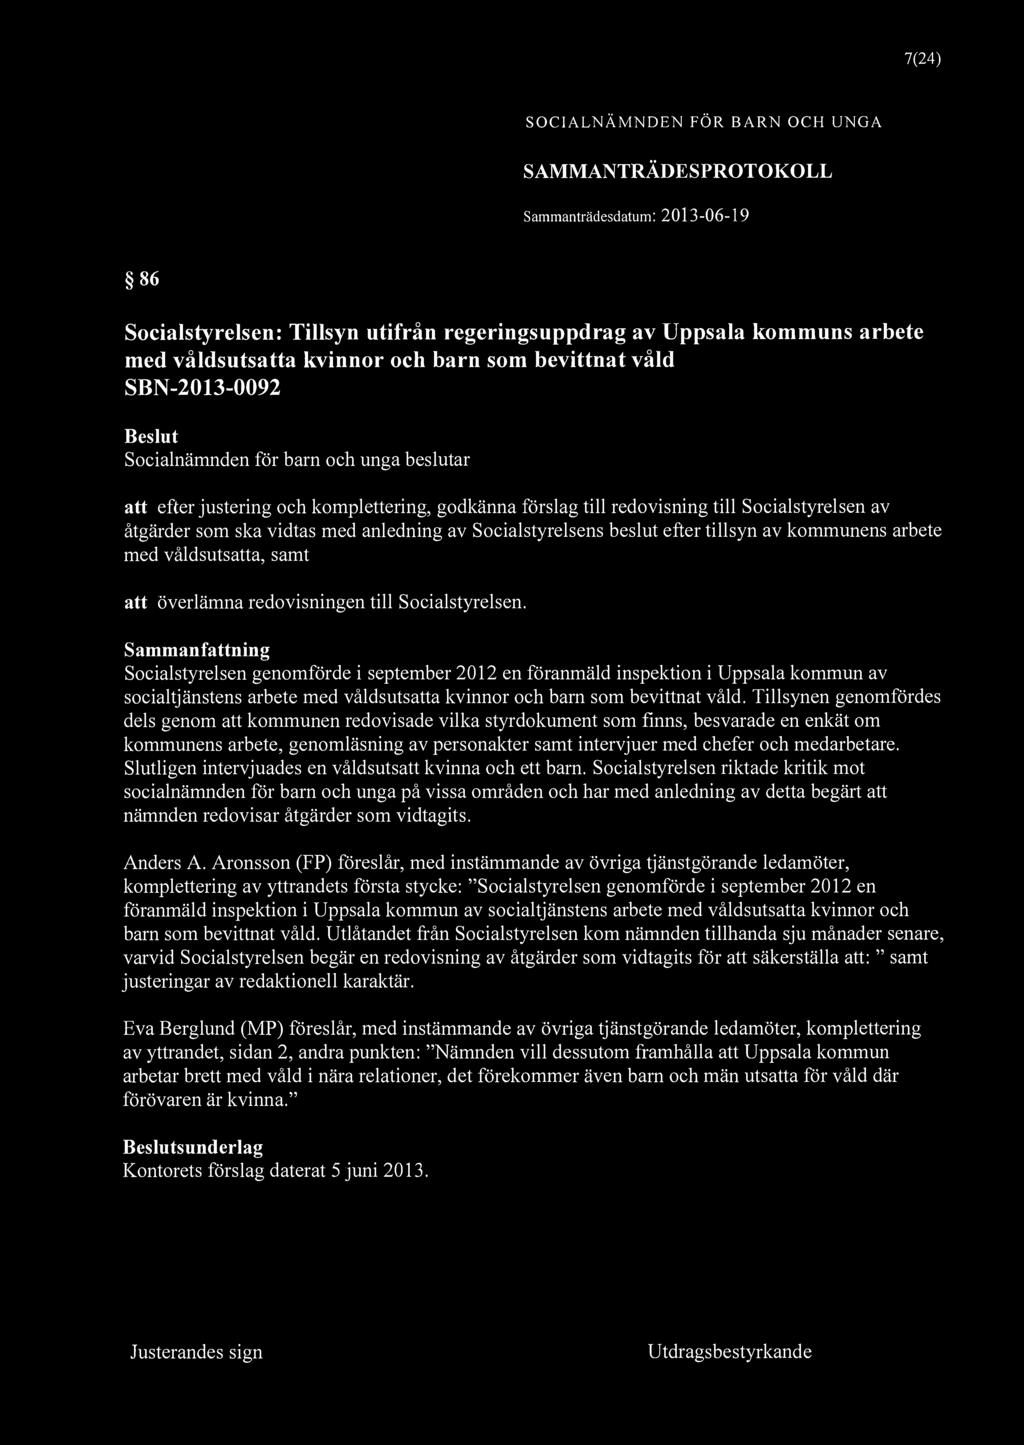 7(24) 86 Socialstyrelsen: Tillsyn utifrån regeringsuppdrag av Uppsala kommuns arbete med våldsutsatta kvinnor och barn som bevittnat våld SBN-2013-0092 att efter justering och komplettering, godkänna